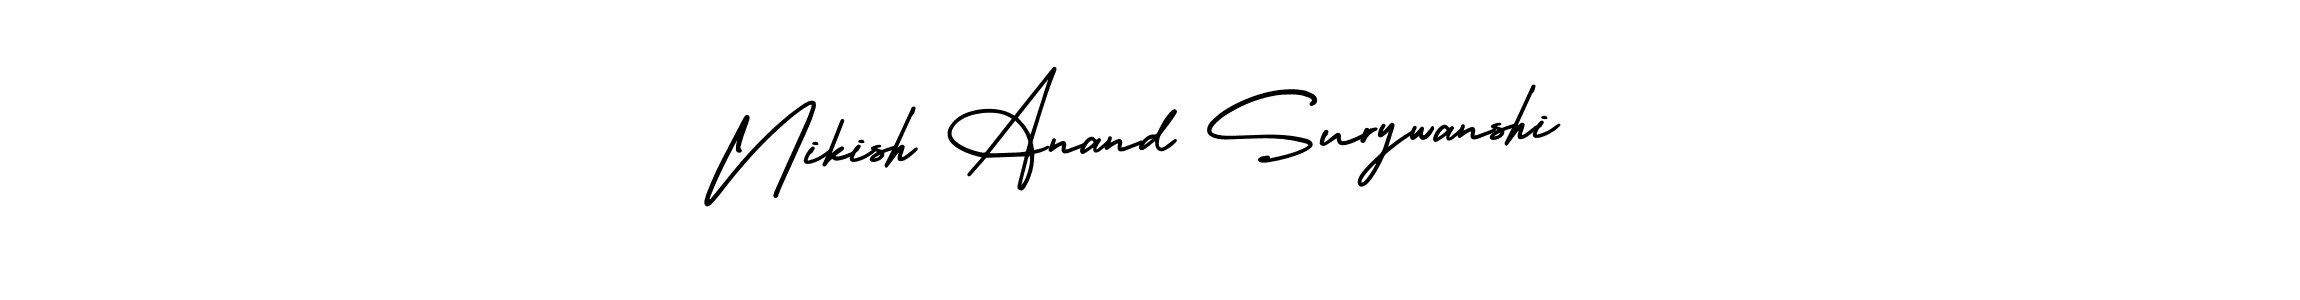 Best and Professional Signature Style for Nikish Anand Surywanshi. AmerikaSignatureDemo-Regular Best Signature Style Collection. Nikish Anand Surywanshi signature style 3 images and pictures png